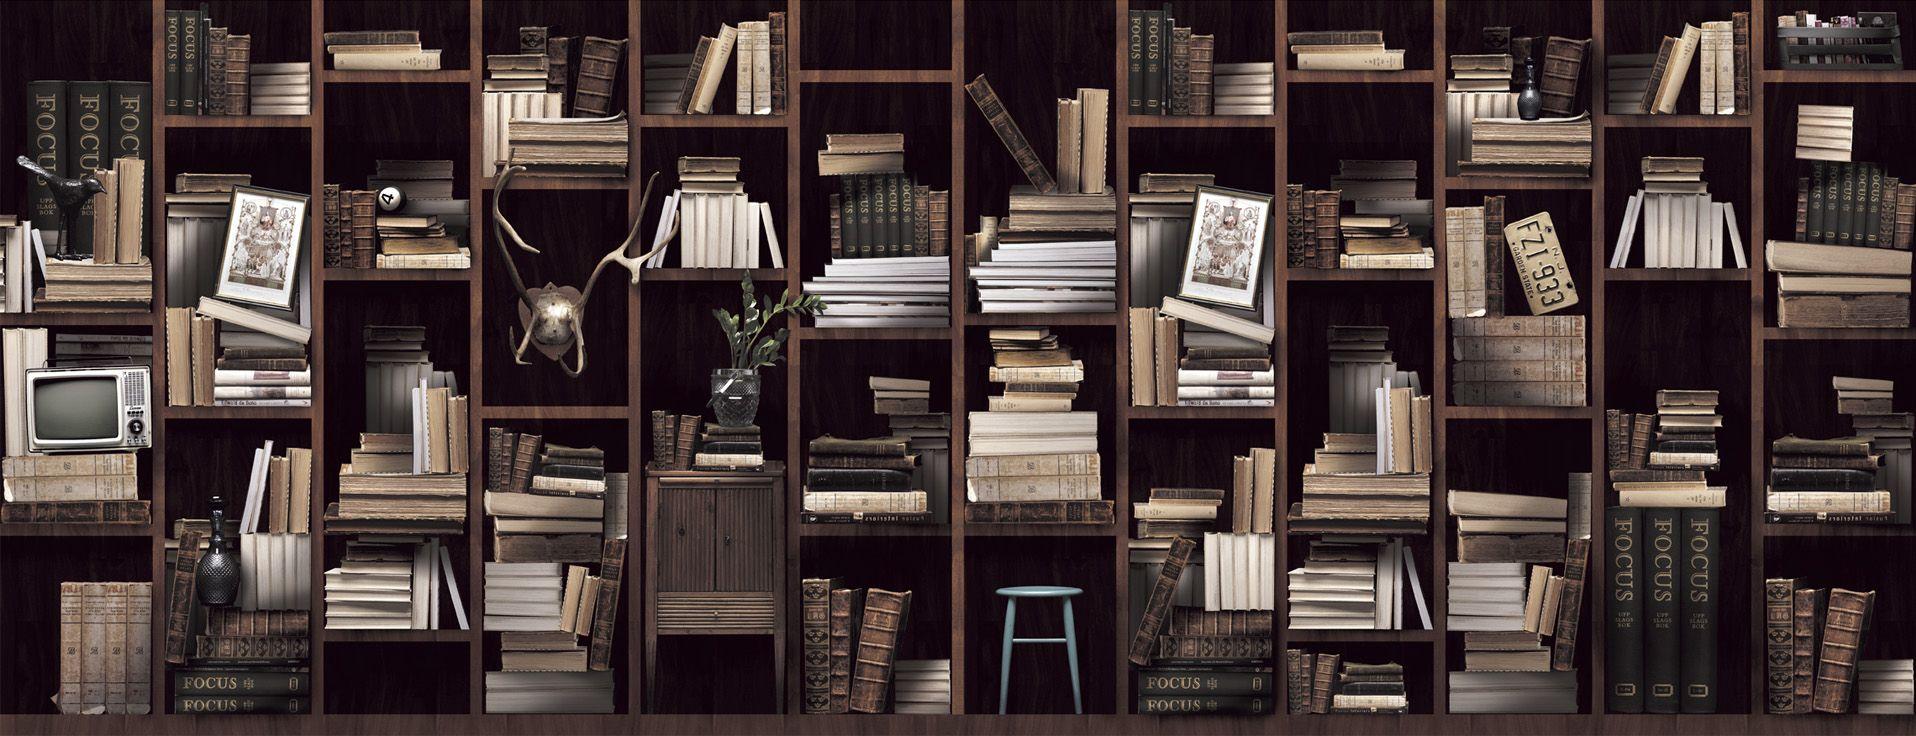 Bookshelf Wallpaper